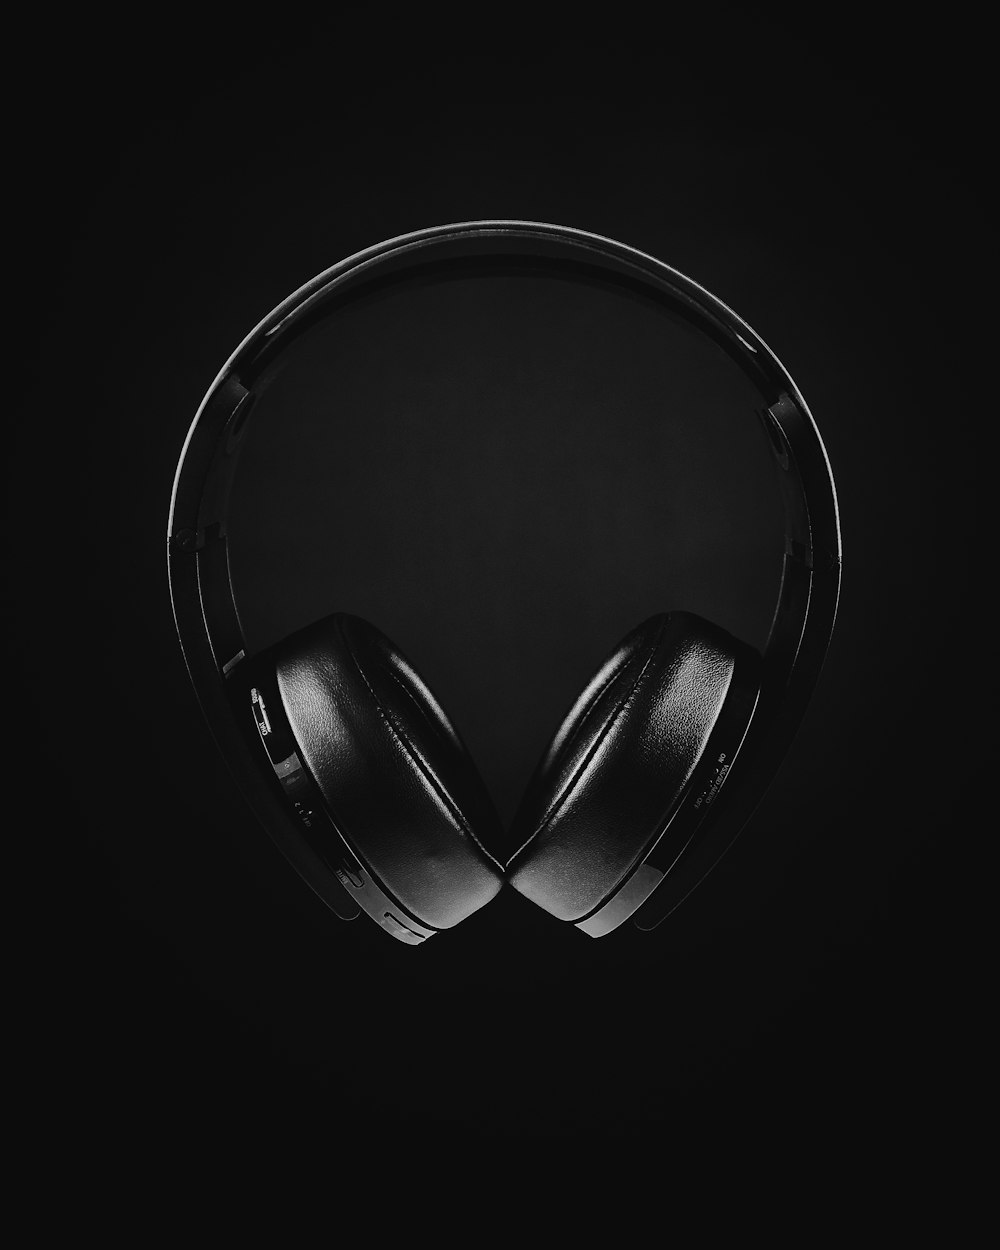 Schwarz-Weiß-Foto von Kopfhörern